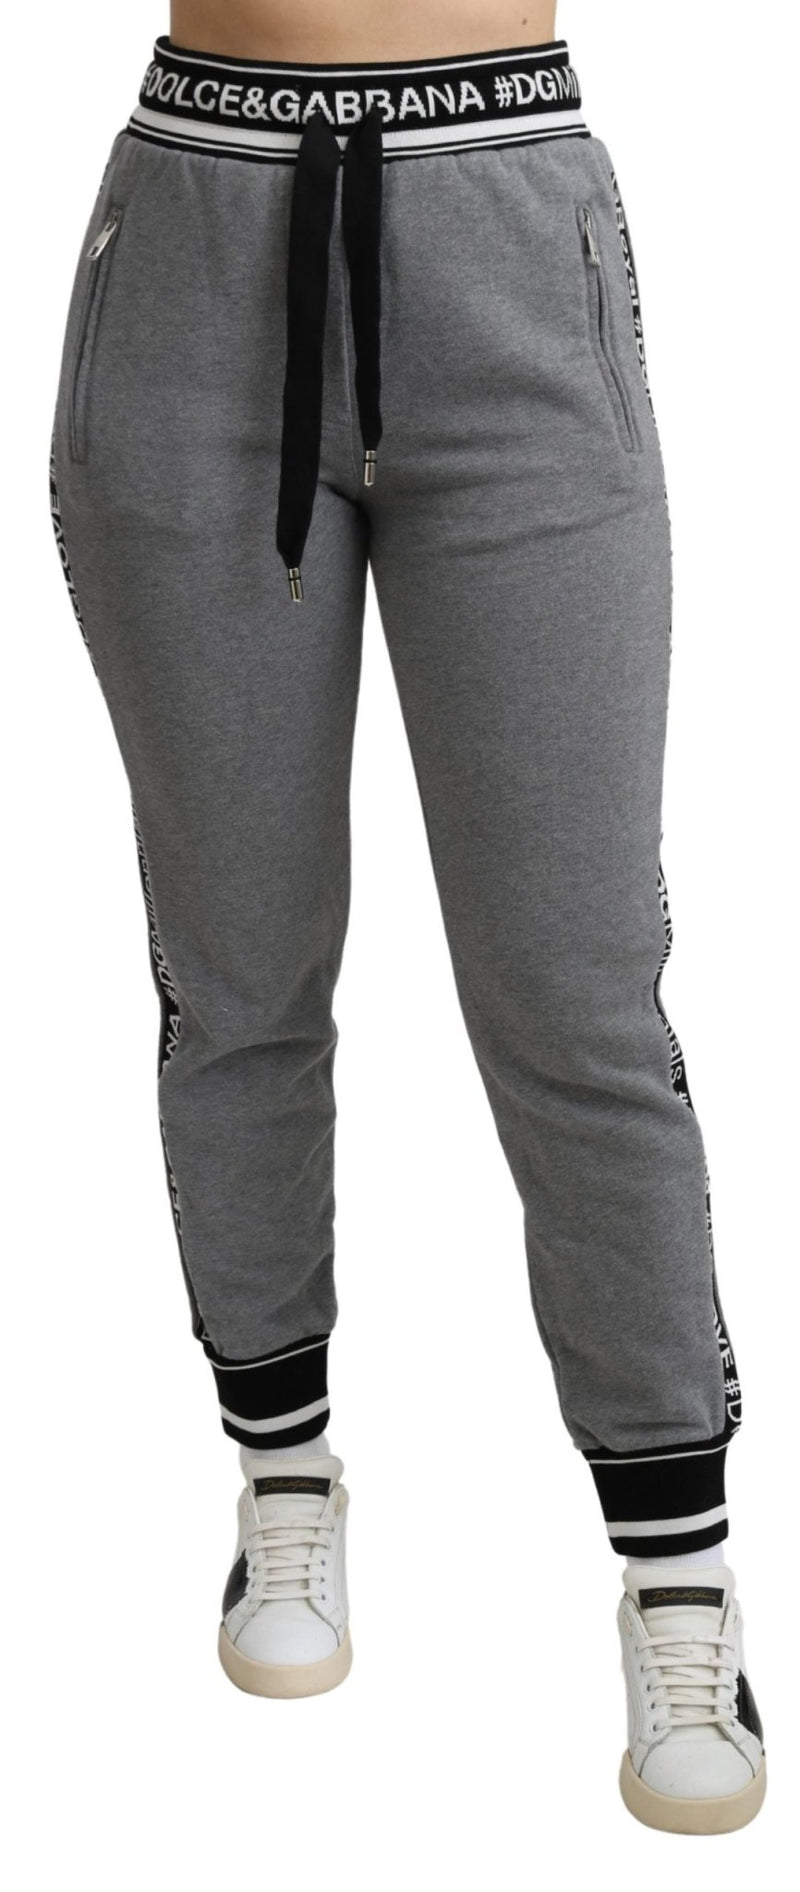 Gray #DGFamily Jogging Trouser Cotton Pants - Avaz Shop